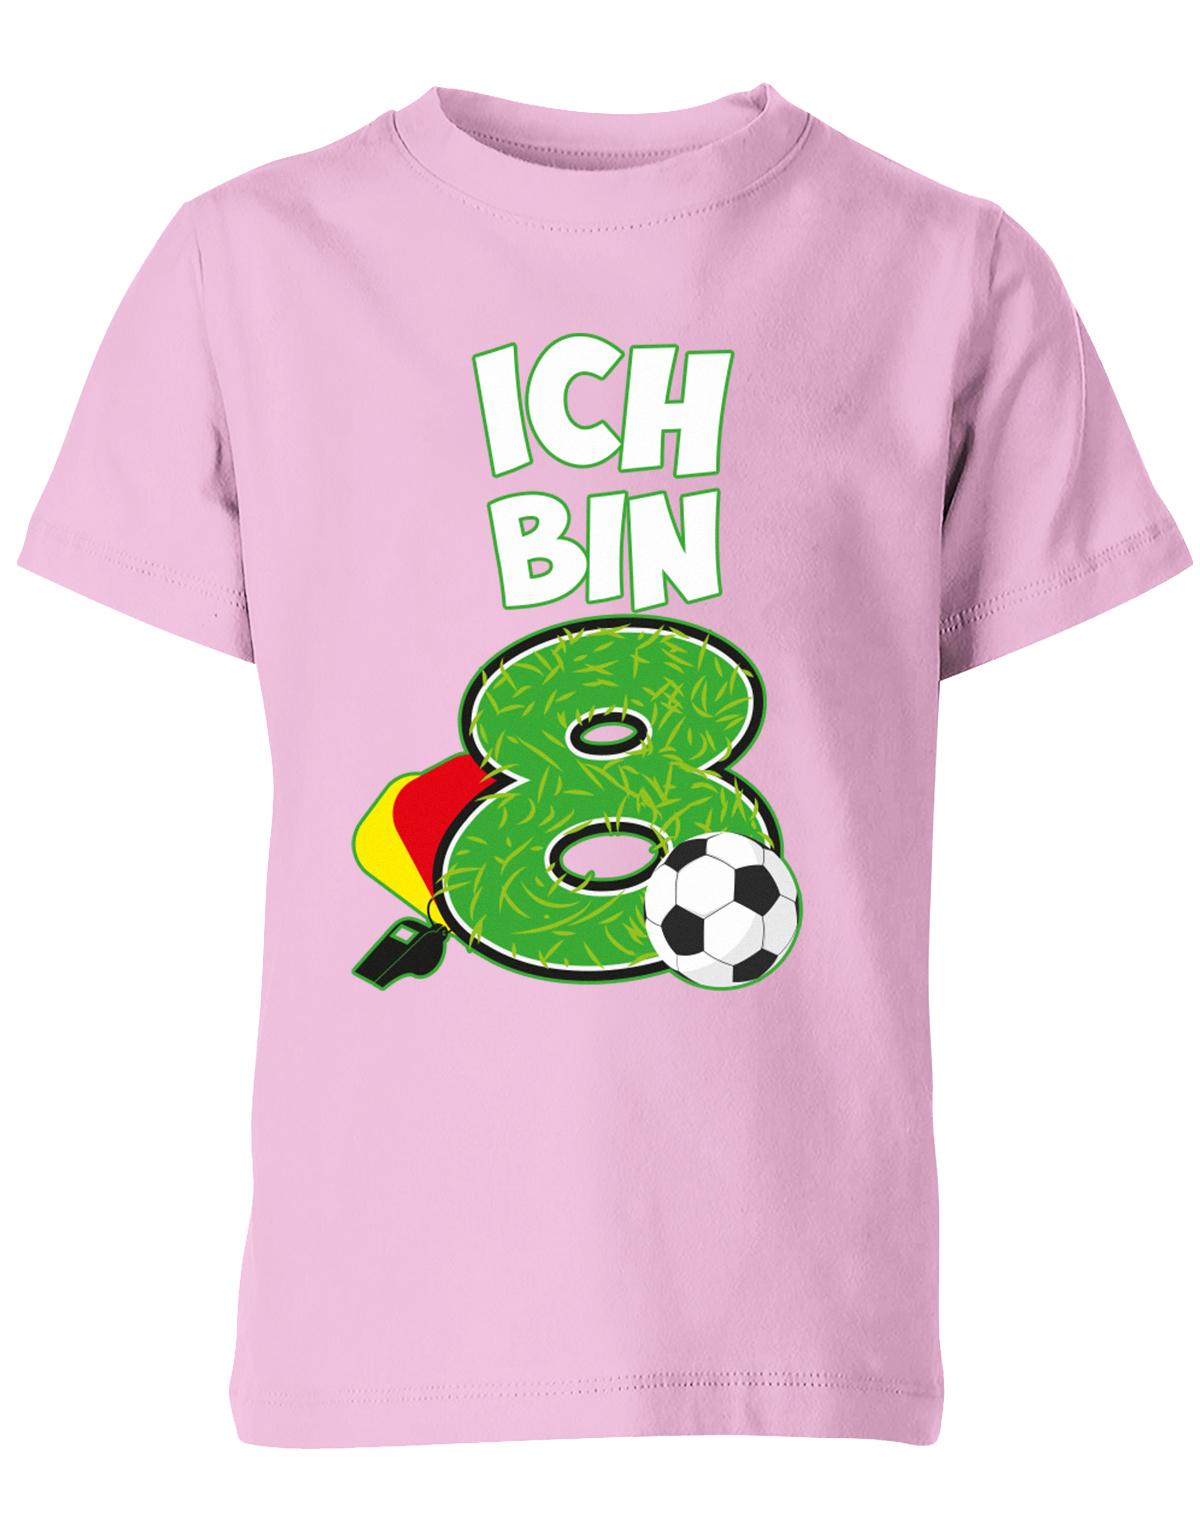 ich-bin-8-fussball-rote-gelbe-karte-geburtstag-fussballer-shirt-kinder-shirt-rosa2G5zK99tF69Dm